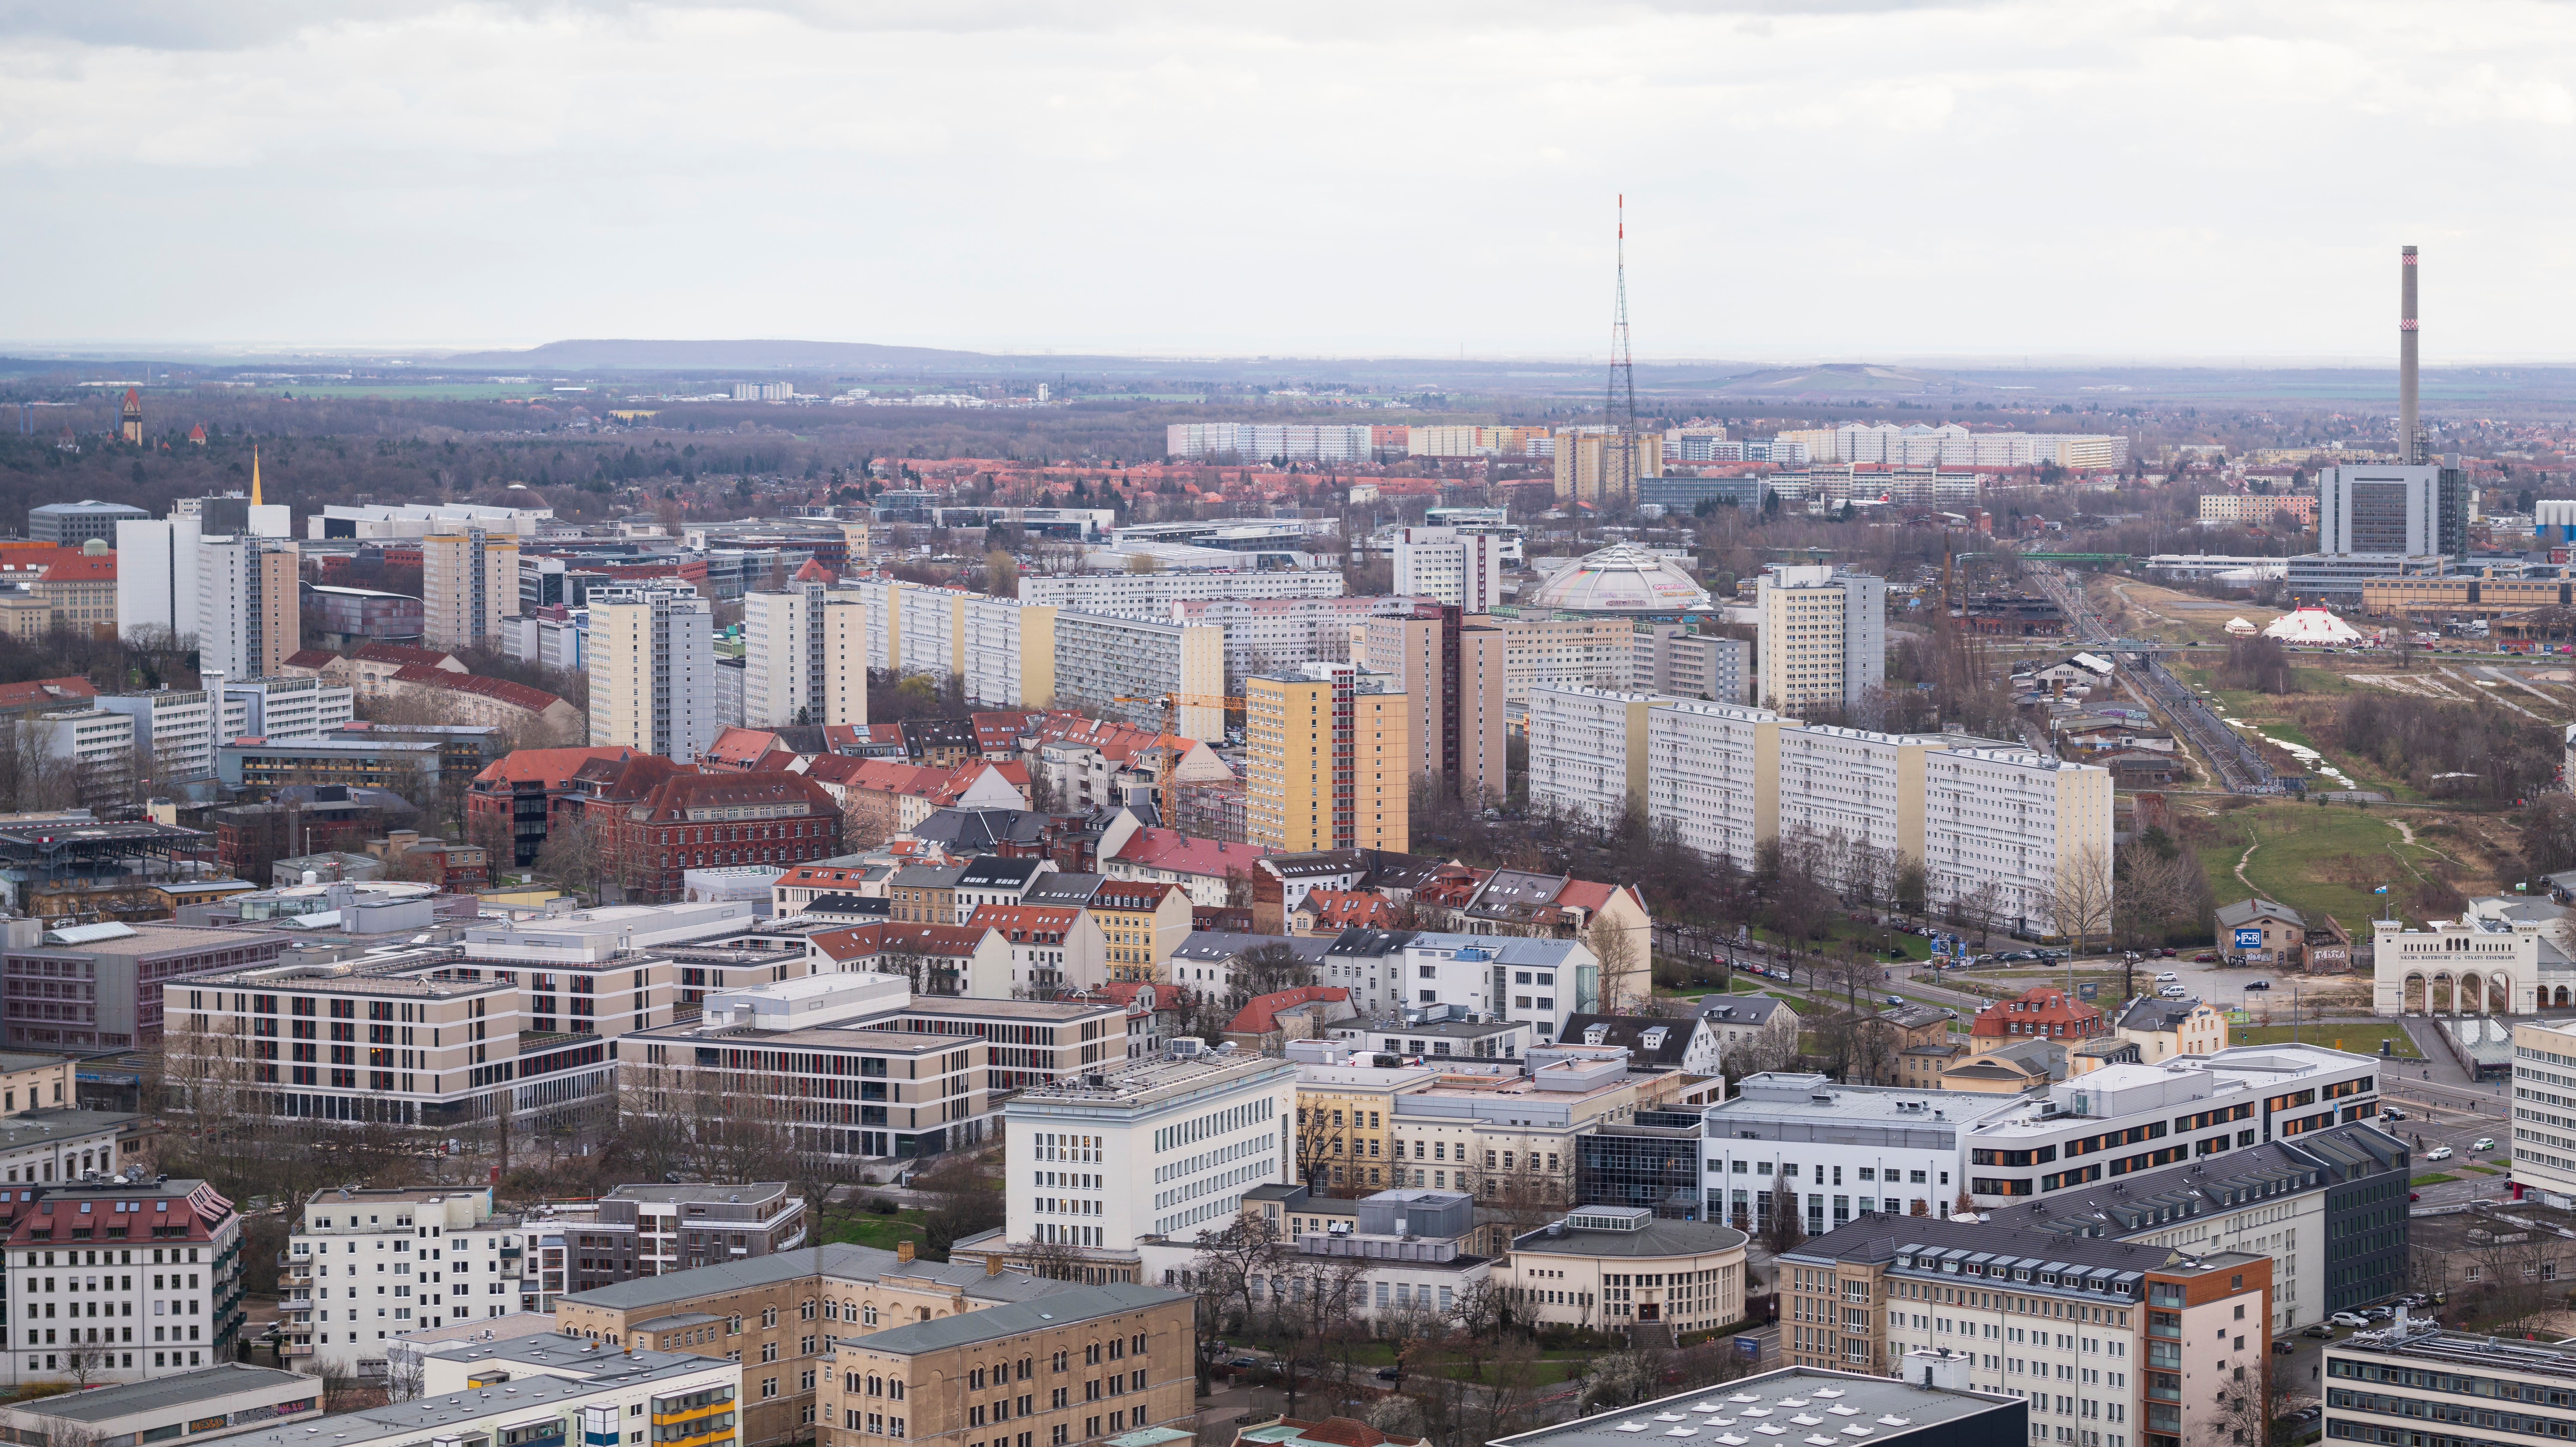   Im Rausch der Großstadtwerdung | Sebastian Ringel veröffentlicht neues Buch zu Leipziger Vorstädten  